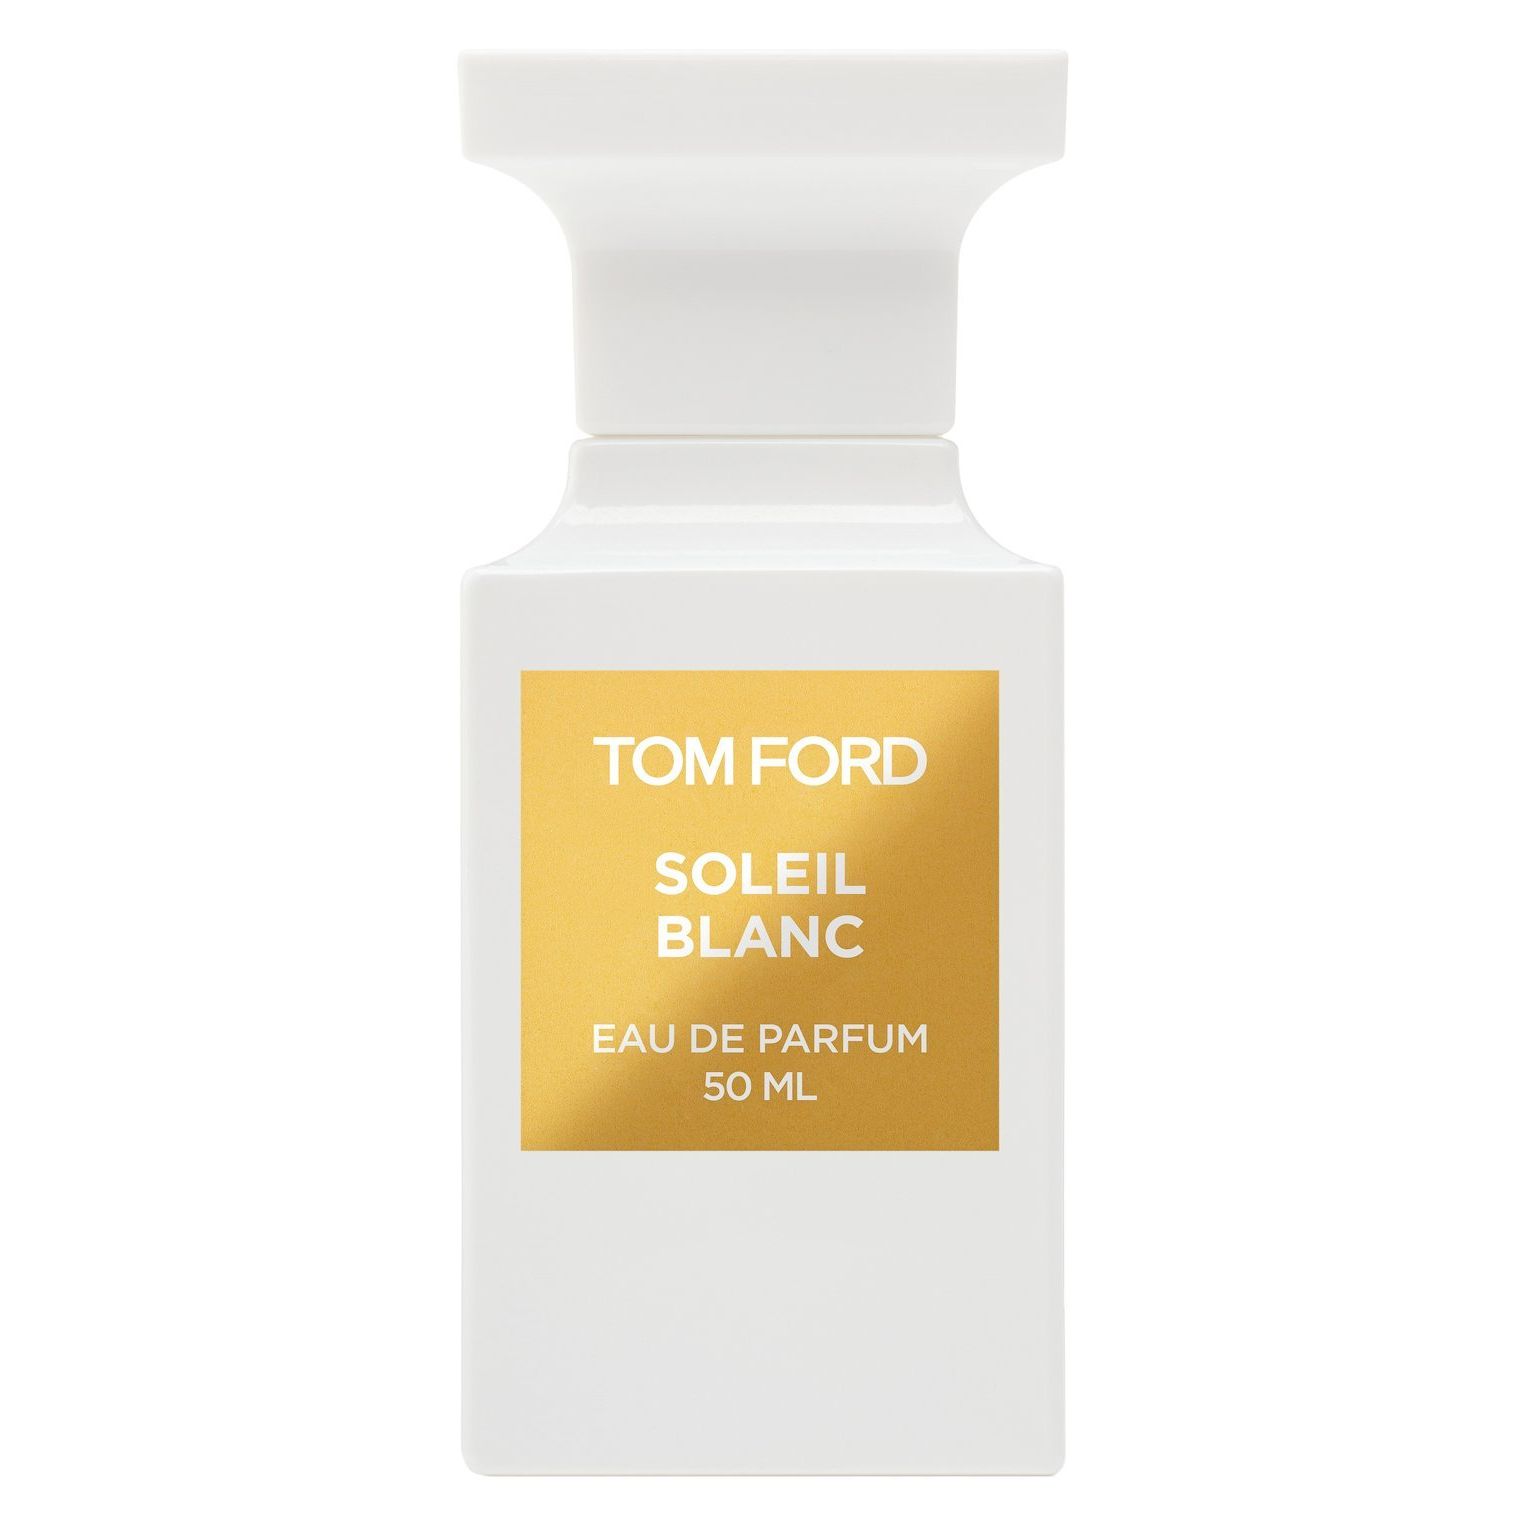 Вода парфюмерная Tom Ford Soleil Blanc, унисекс, 50 мл van cleef oud blanc 75